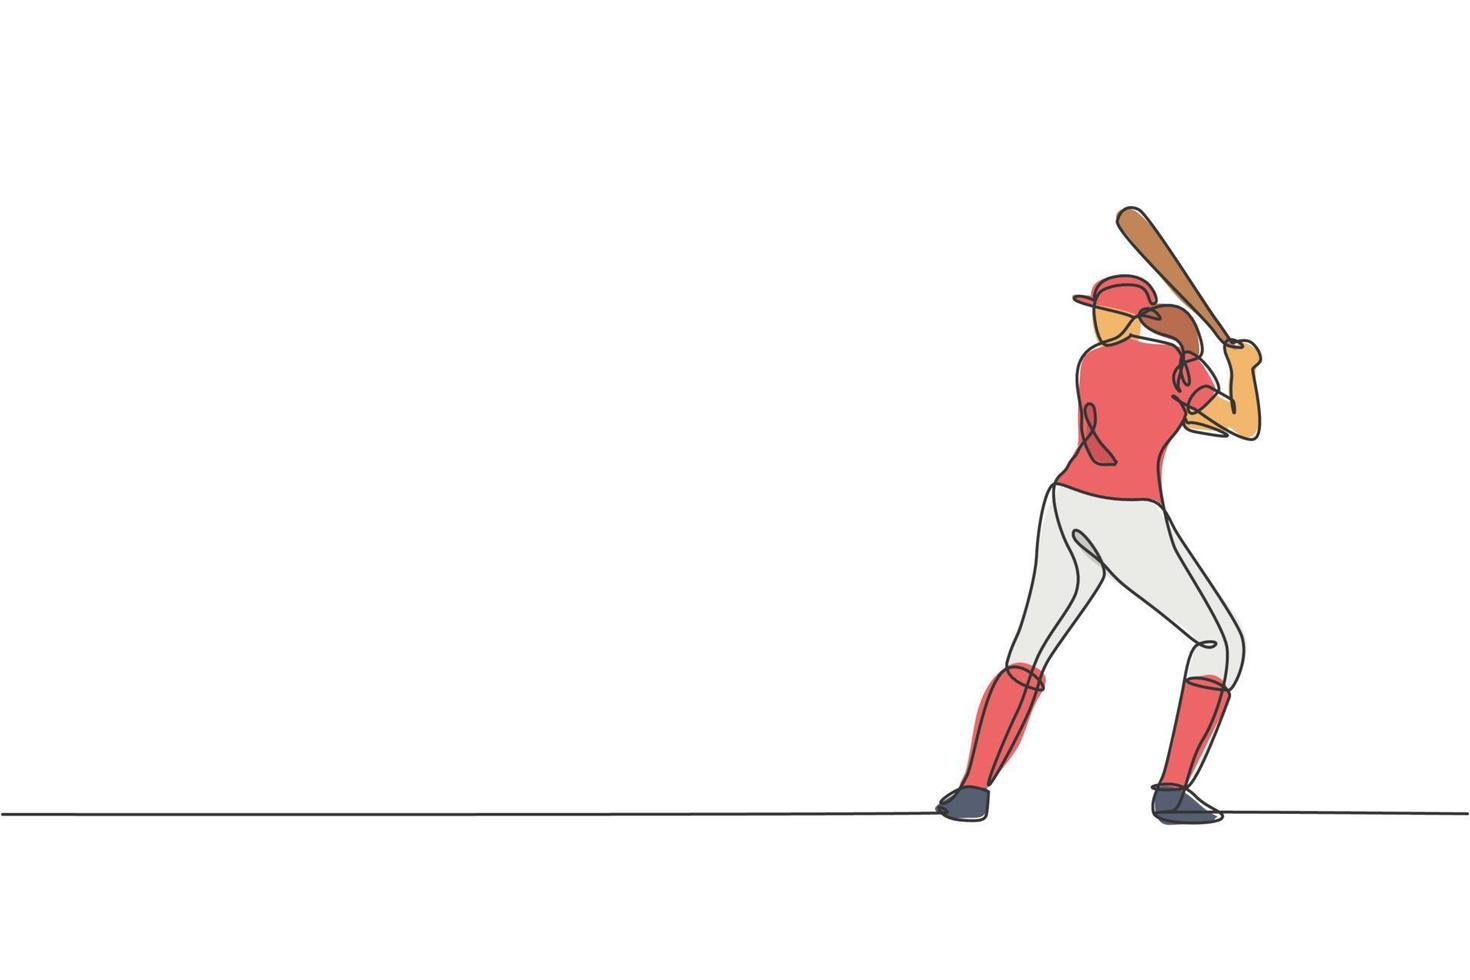 en kontinuerlig linjeteckning av ung sportig kvinna baseballspelare praxis att slå bollen på fältet. tävlingsidrottskoncept. dynamisk enda rad rita design vektor illustration för marknadsföring affisch